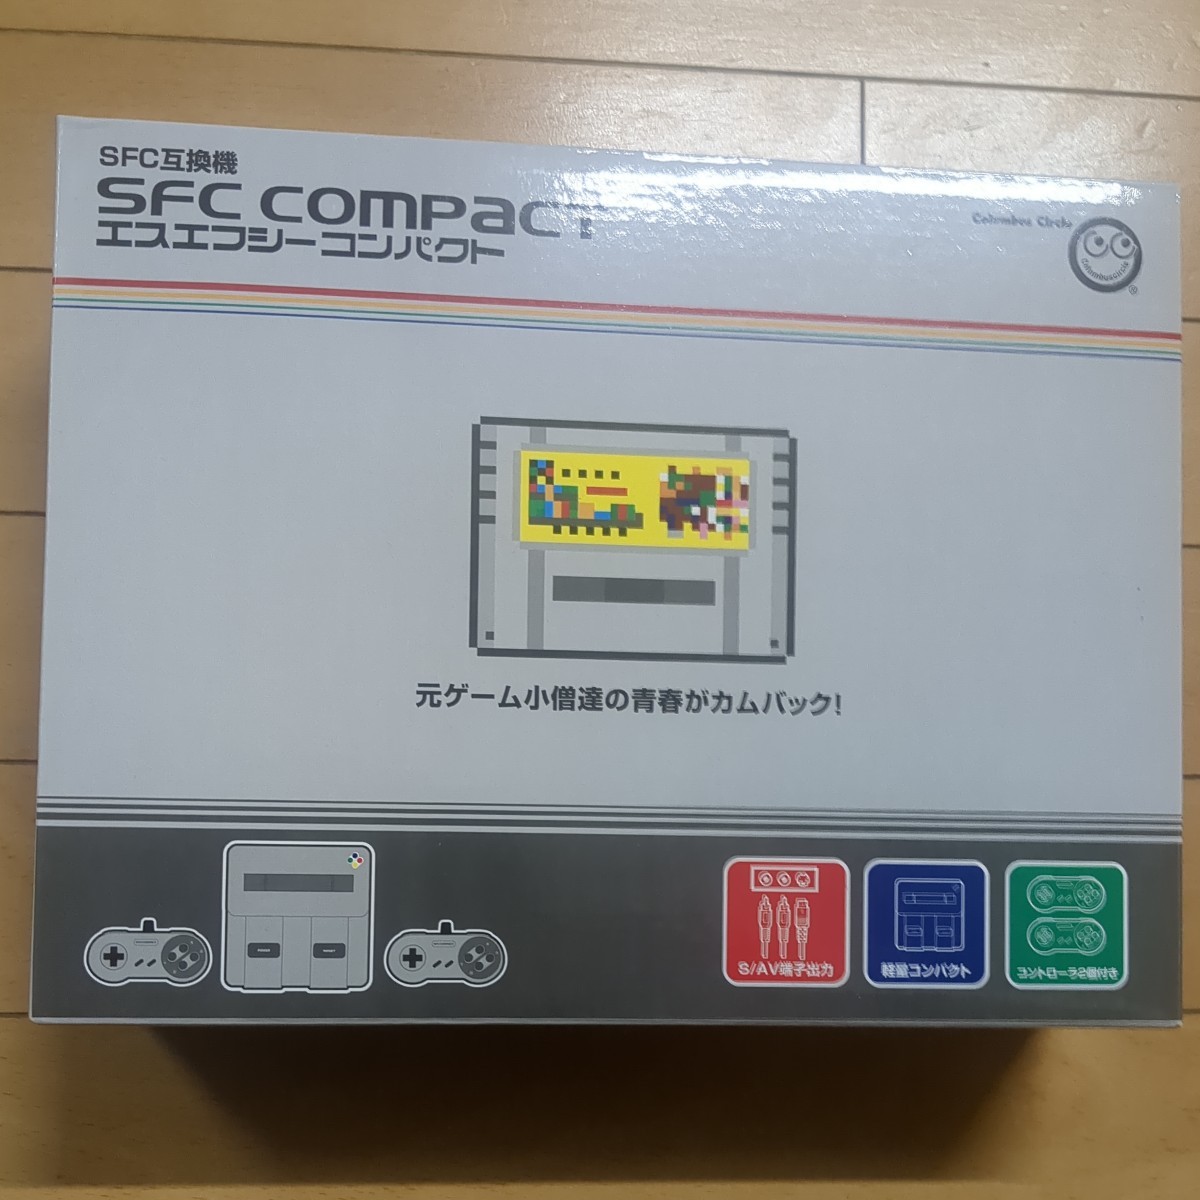 SFC COMPACT(エスエフシーコンパクト)(スーパーファミコン互換機)(CC-SFCG-GY)コロンバスサークル SFC互換機_画像2